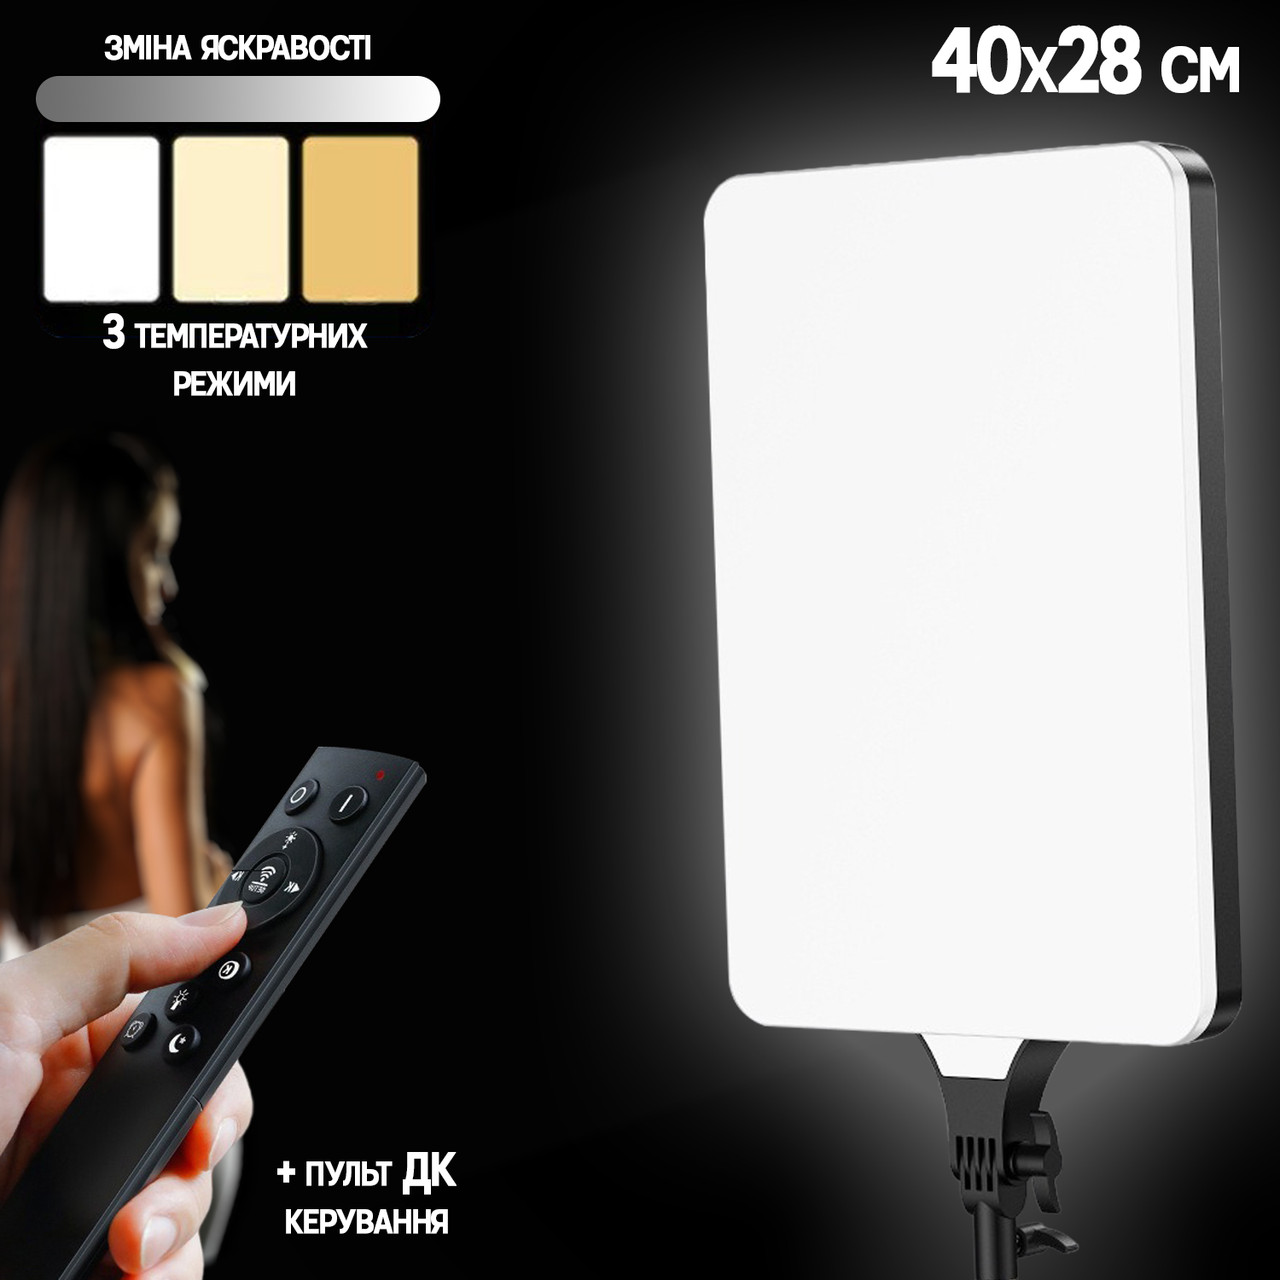 Світлодіодна лампа студійного освітлення LR24-Remote постійне світло для фото, відео 40х28 см, Пульт ДК UKG